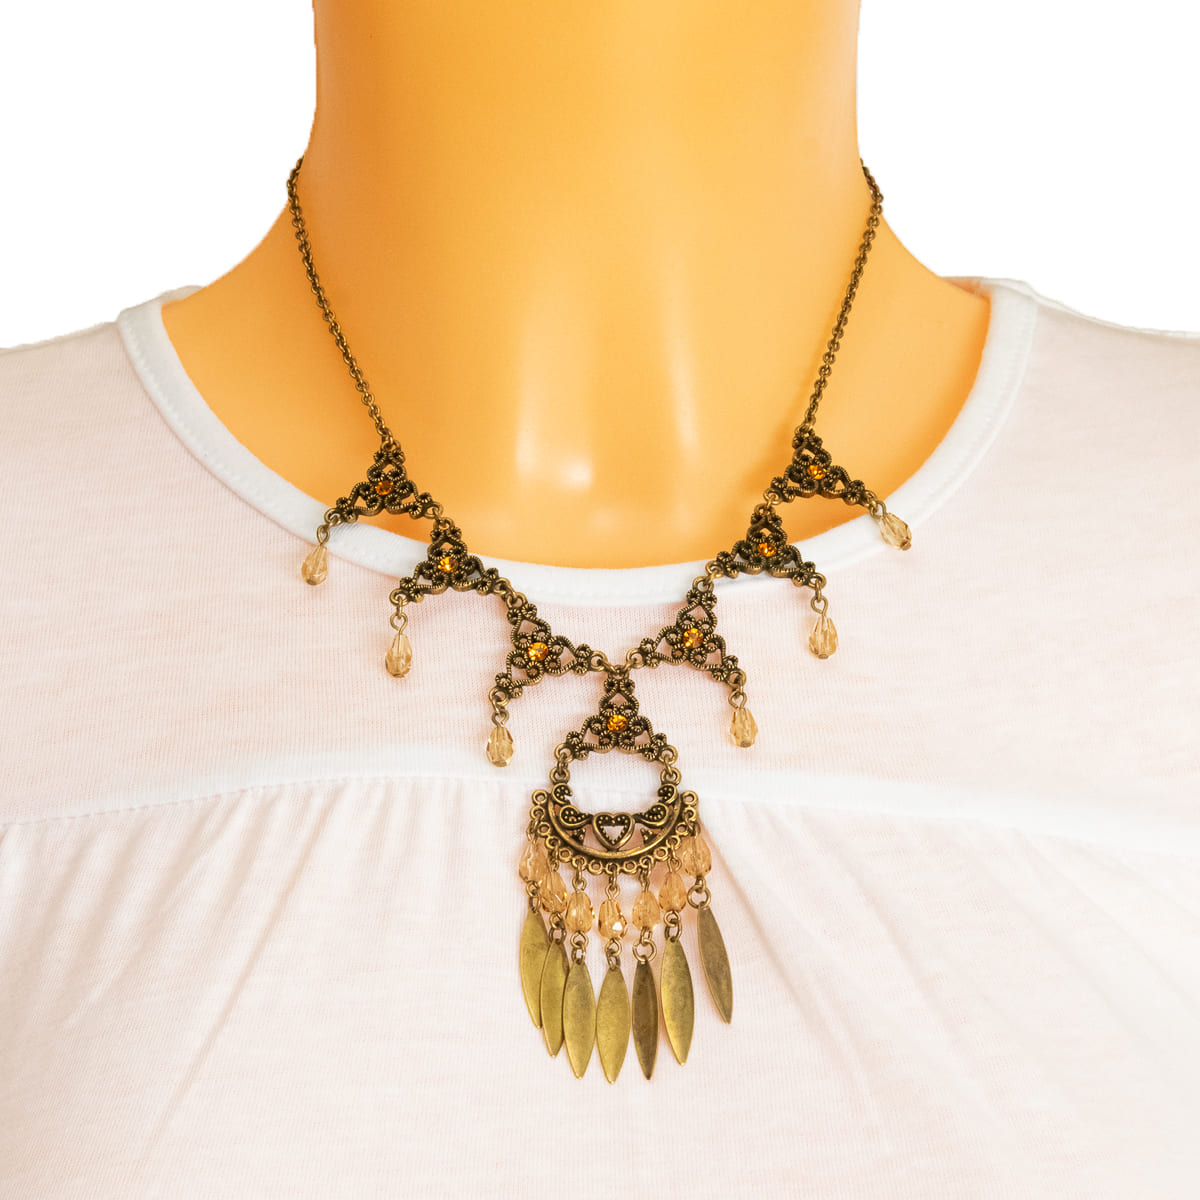 K.V. Fuchs Design Schmuck Damen Halskette in gold, kupfer, Vintage-Look mit Schmucksteinen in orange, topas »K-3008«